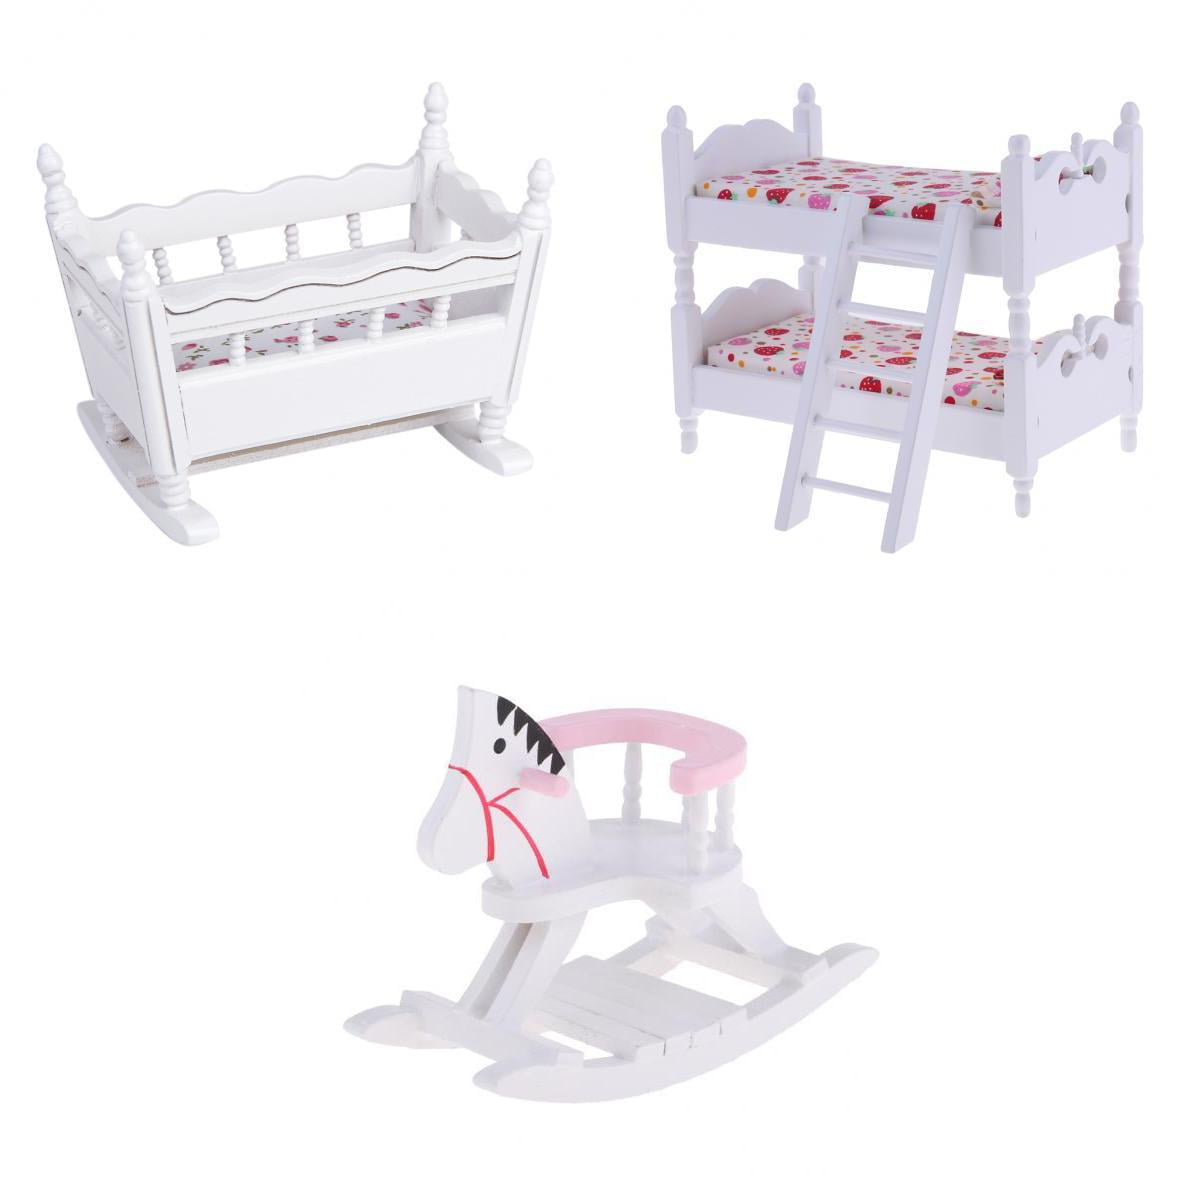 1/12 Dollhouse Furniture Children Bedroom Wood Bunk Bed Cradle Rocking Horse 